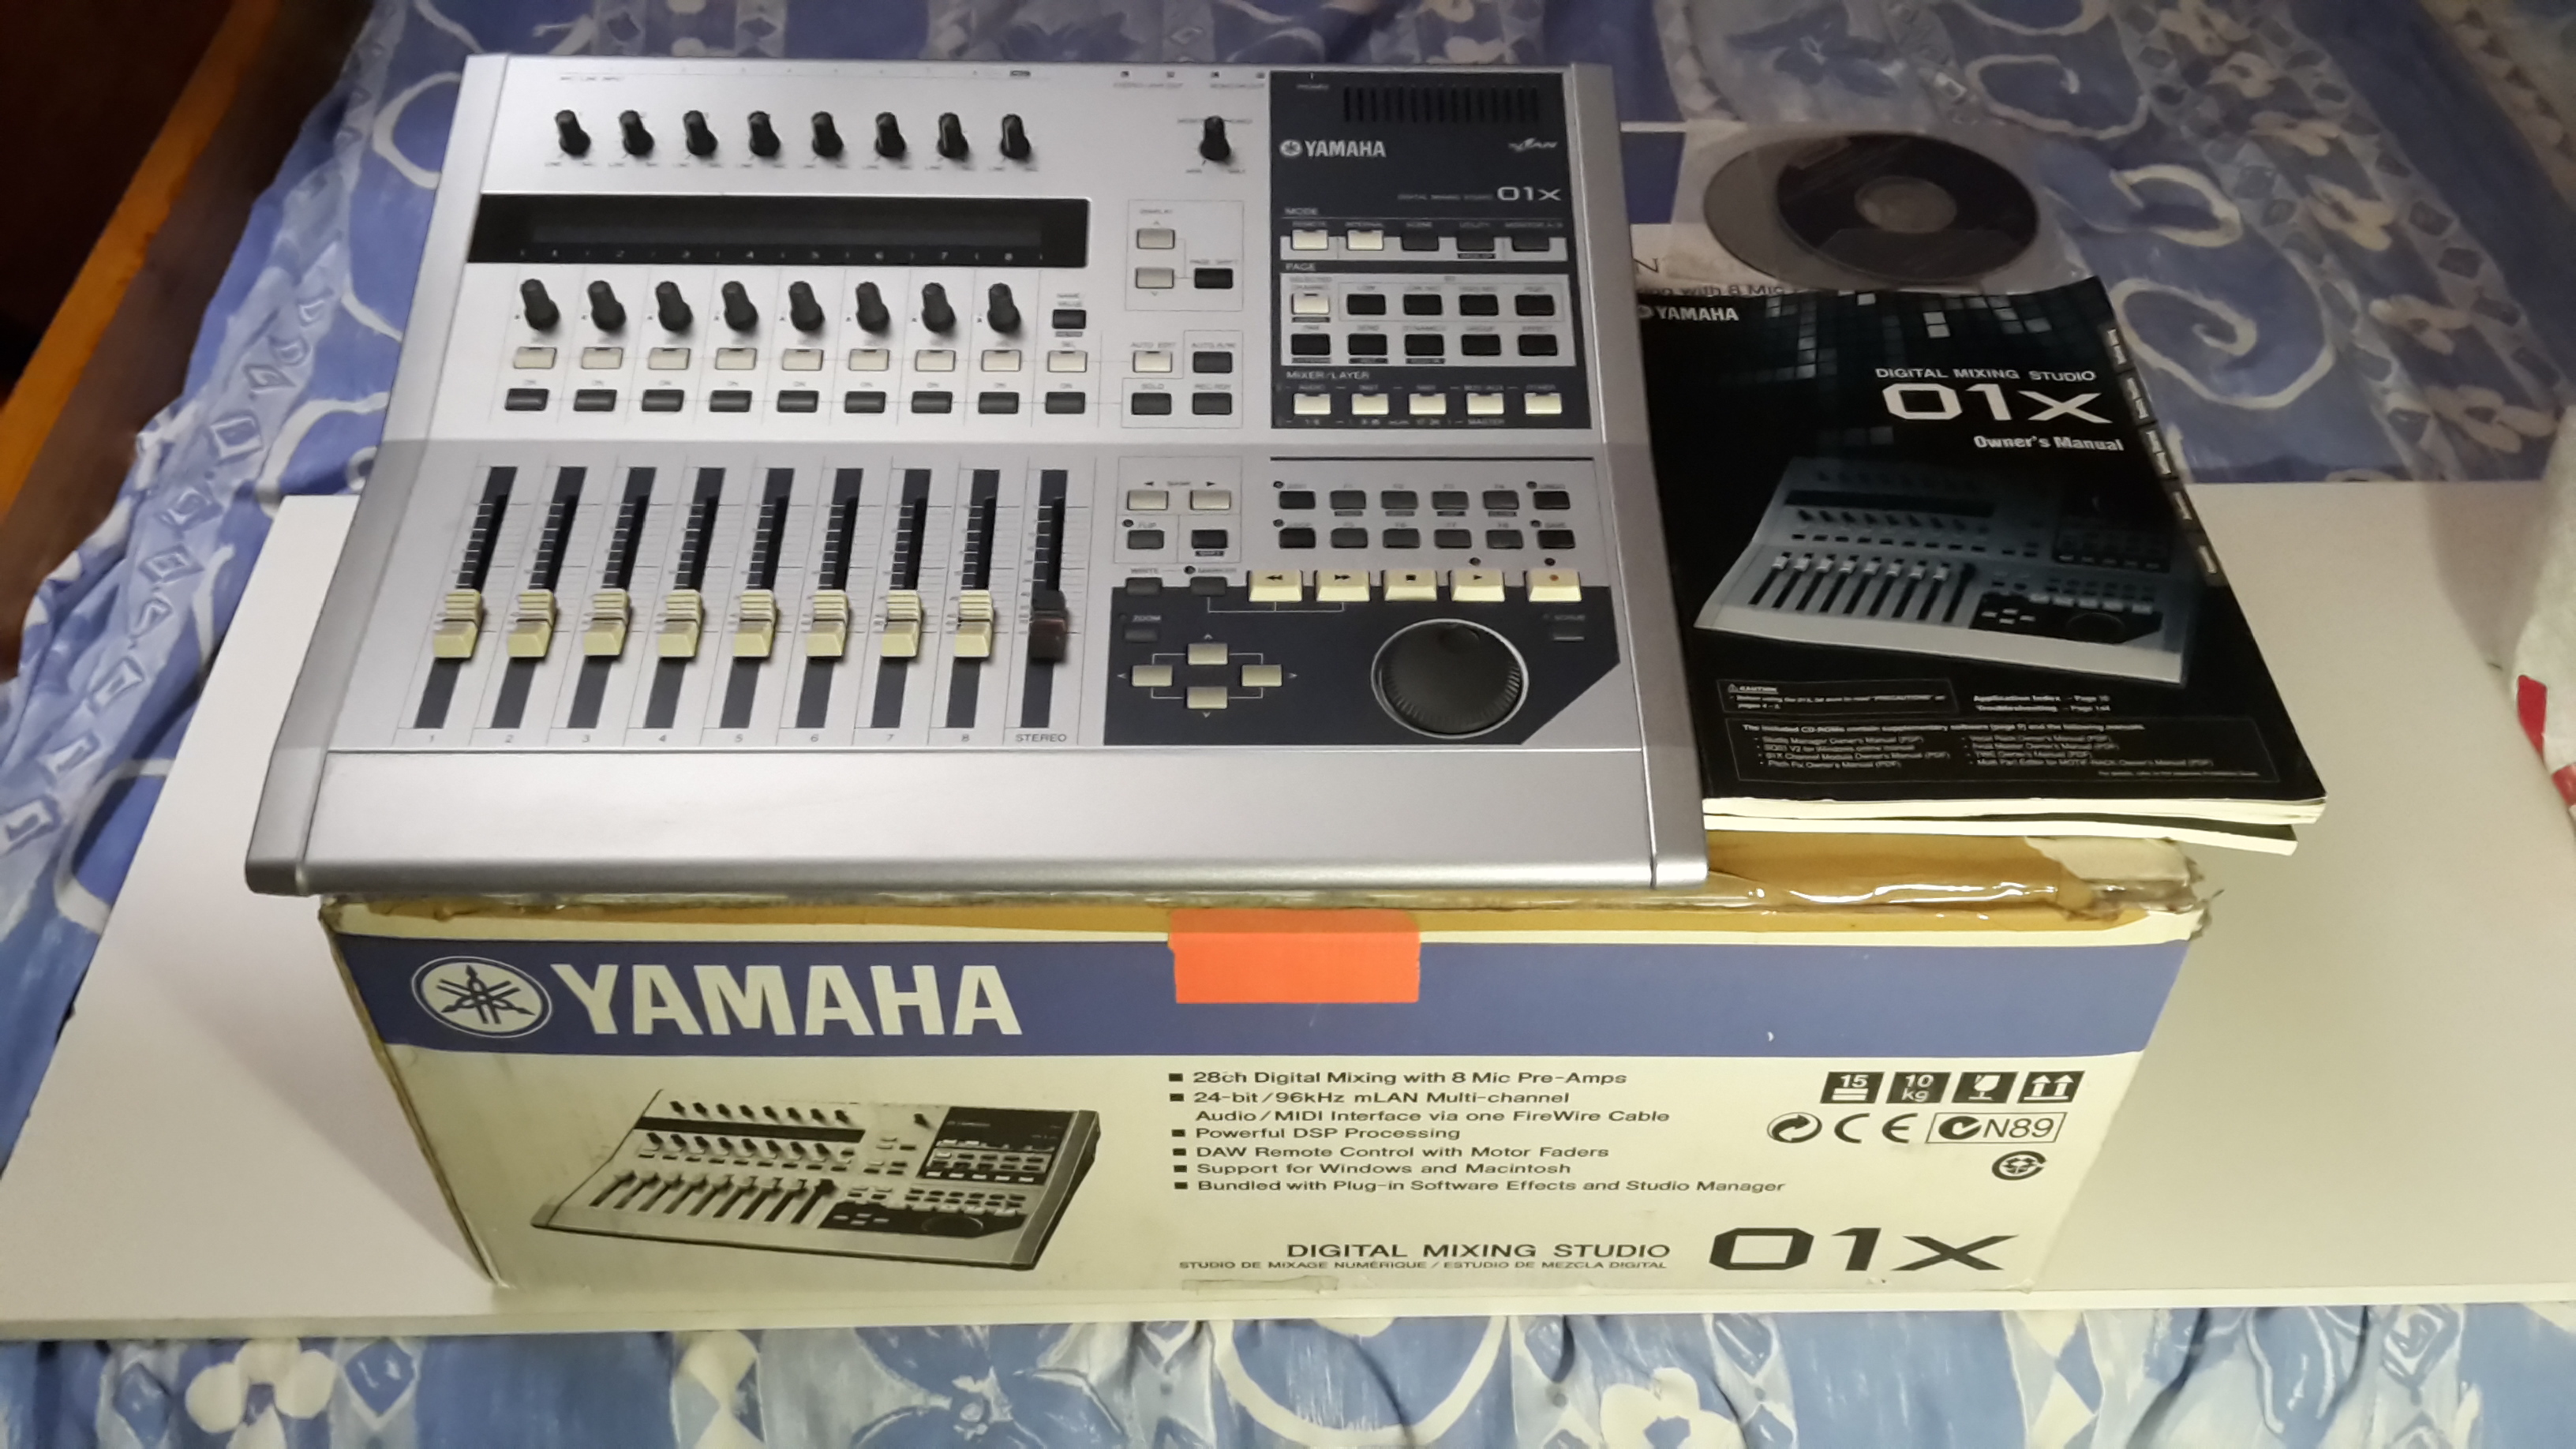 Yamaha 01x Manual